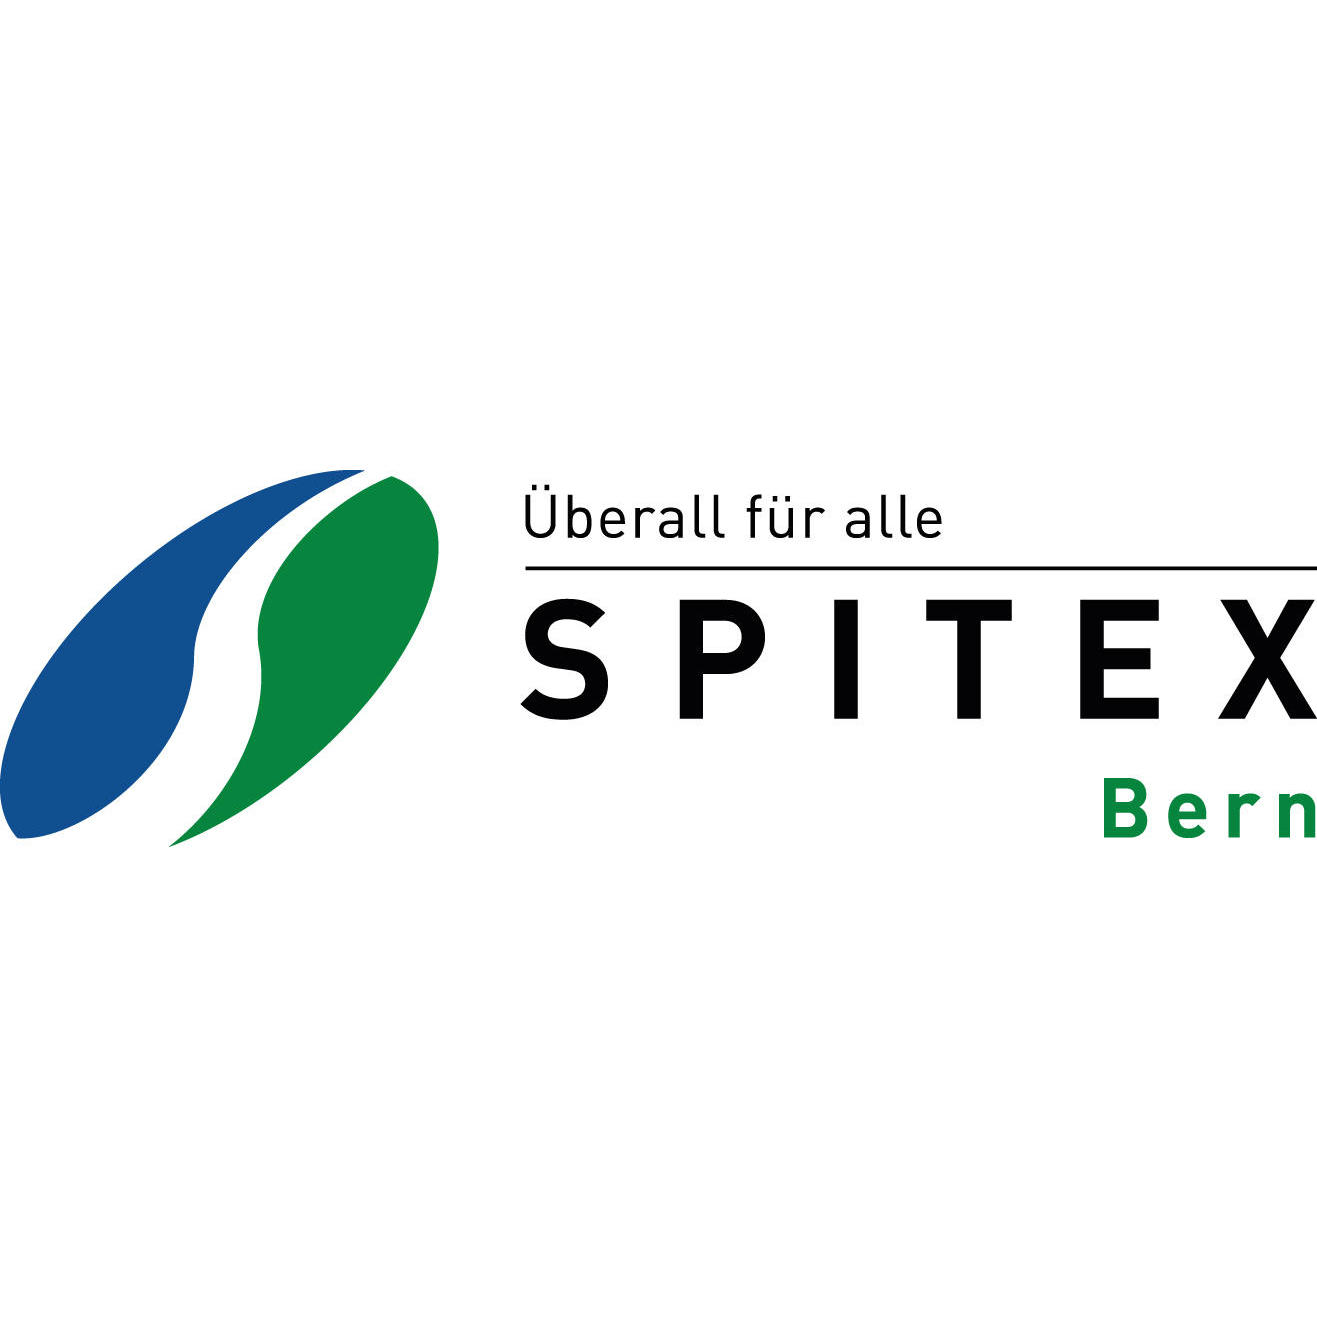 SPITEX BERN Bern 031 388 50 50